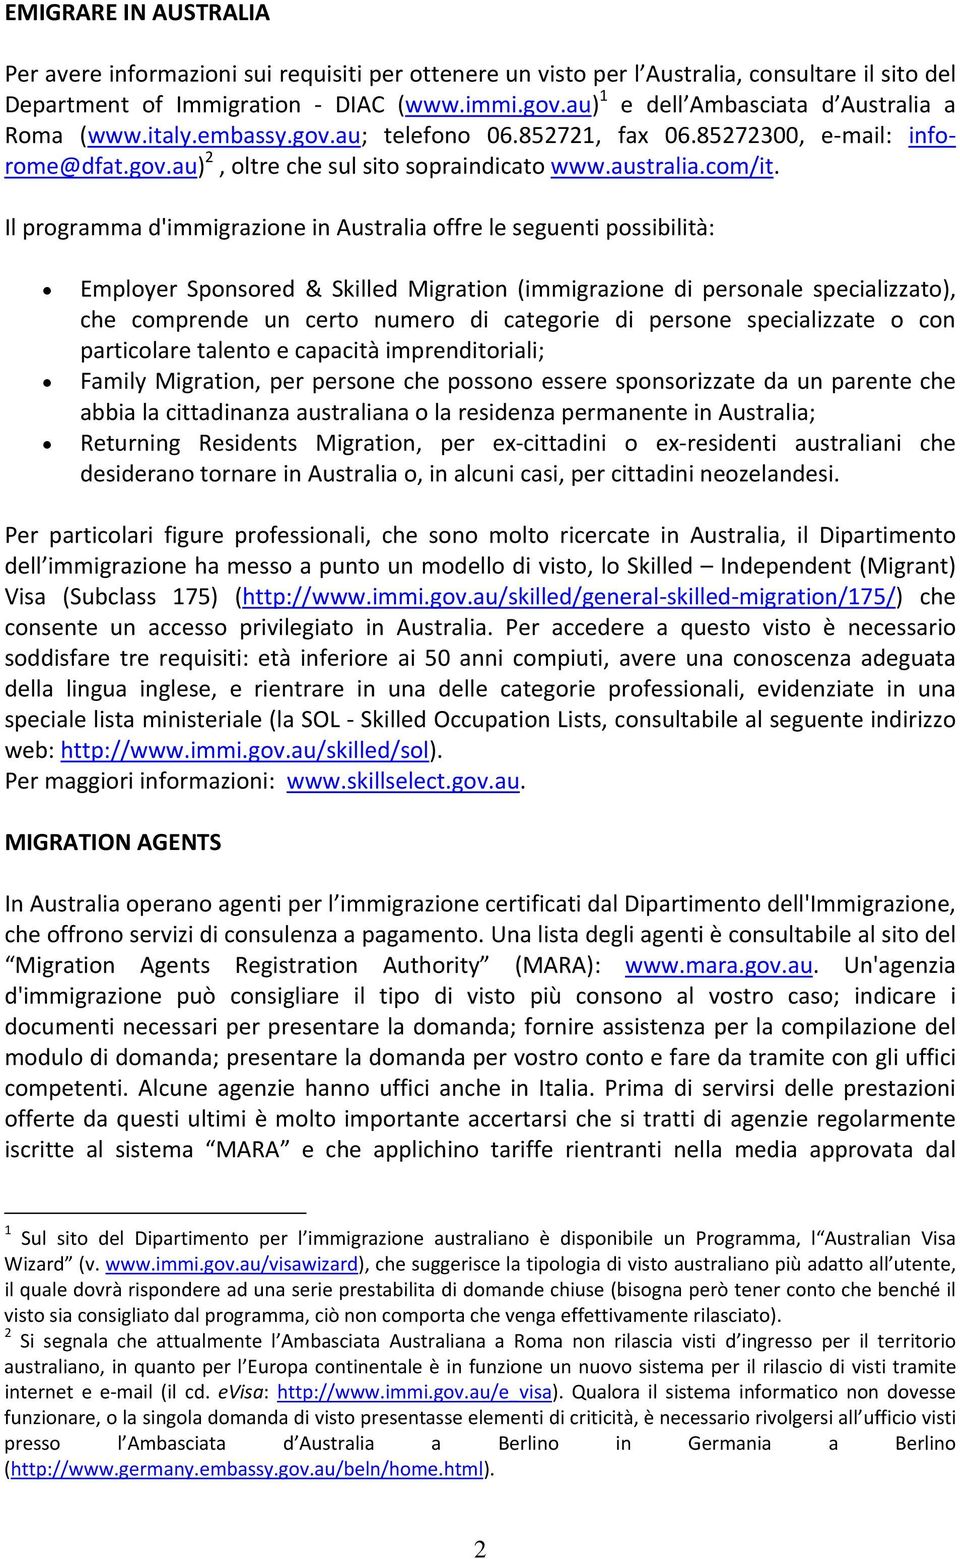 Il programma d'immigrazione in Australia offre le seguenti possibilità: Employer Sponsored & Skilled Migration (immigrazione di personale specializzato), che comprende un certo numero di categorie di